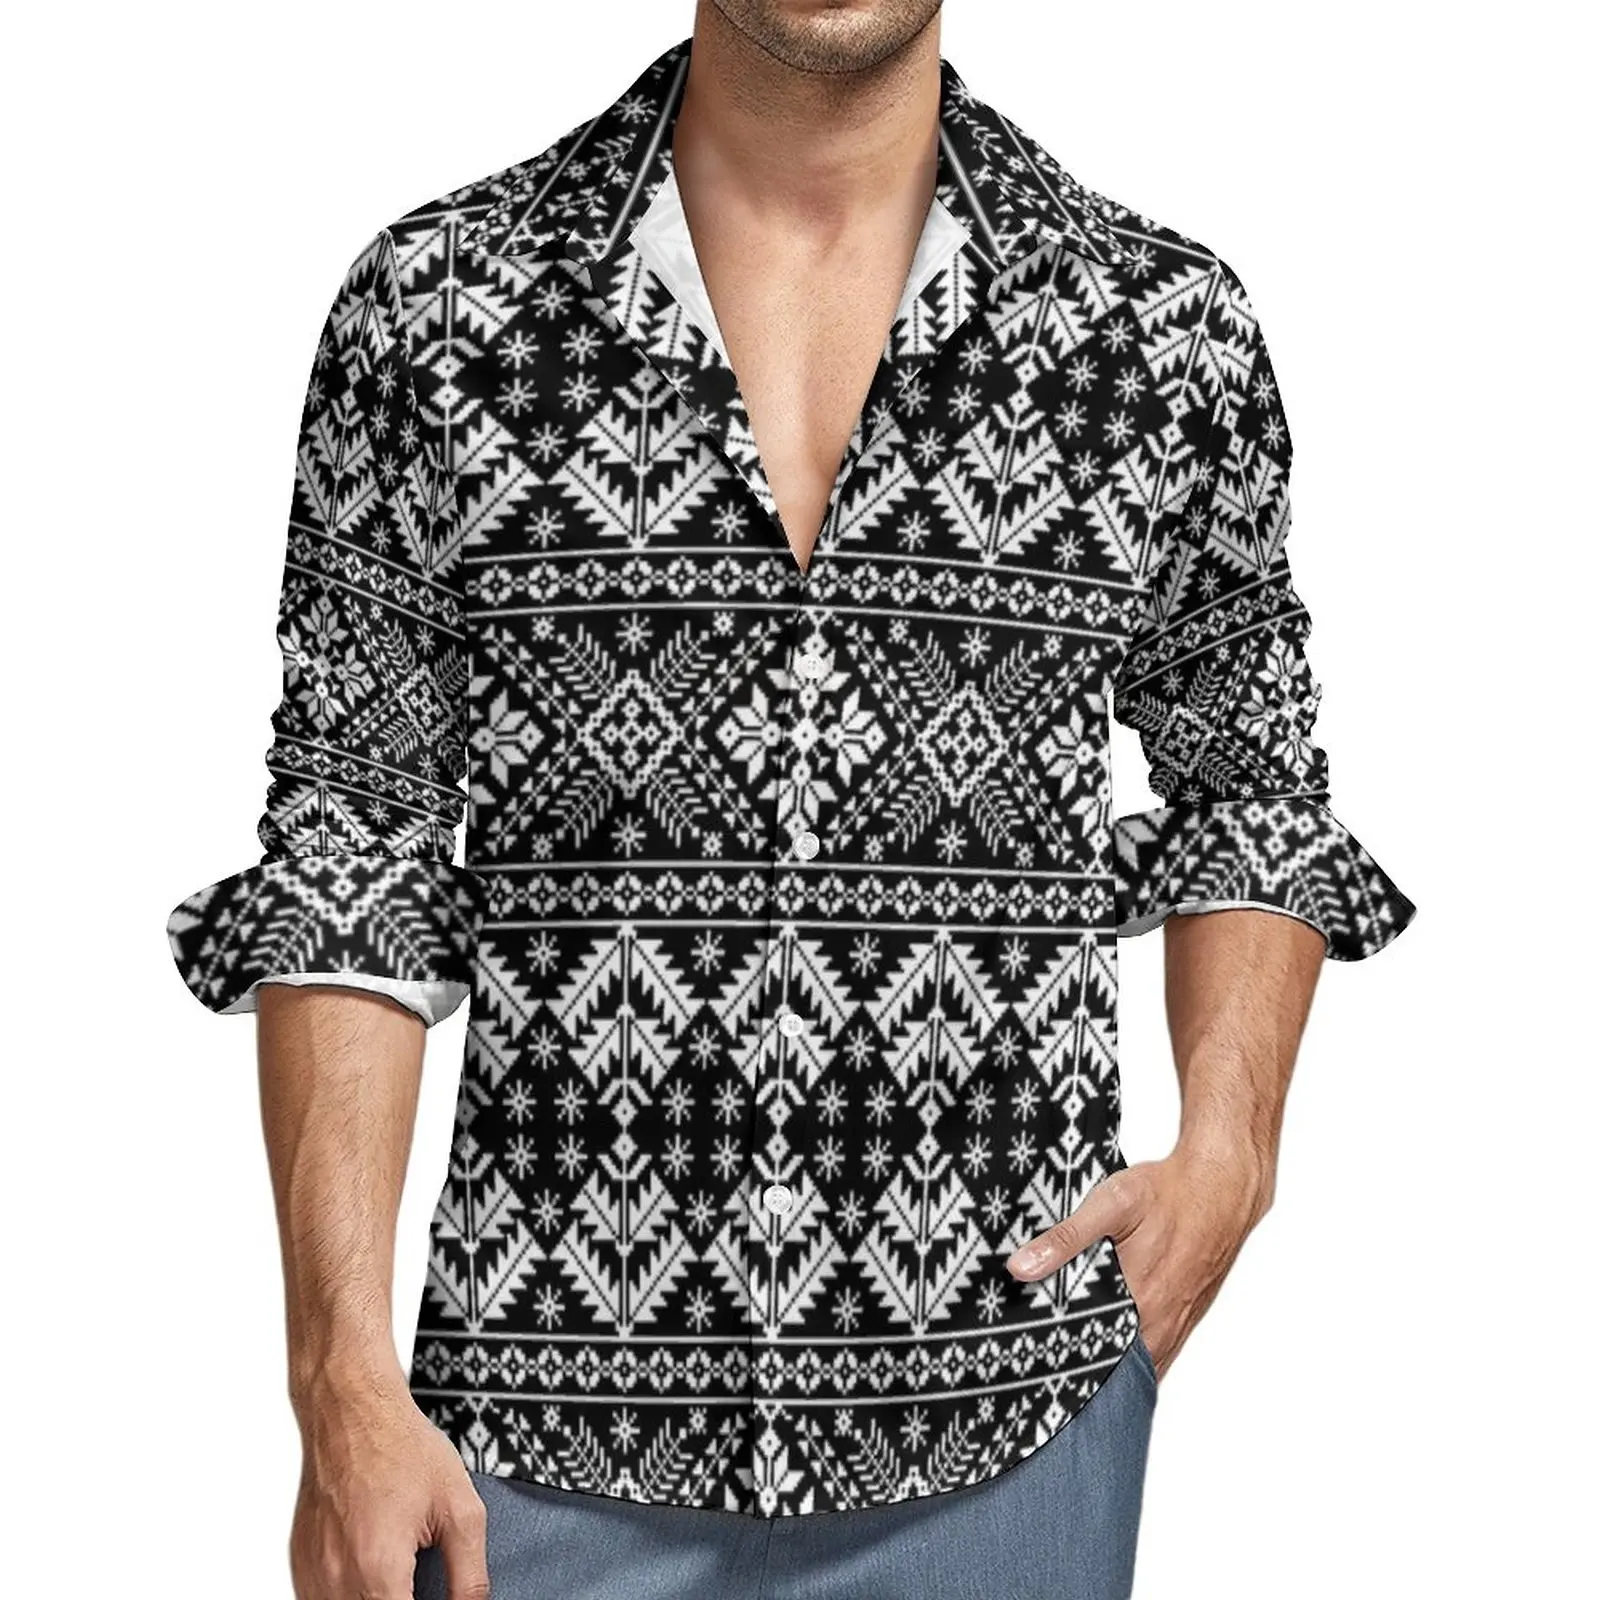 

Рубашка мужская с винтажным принтом, праздничная блузка в скандинавском стиле, повседневная Стильная кофта с графическим принтом, крутой Топ оверсайз с длинным рукавом, идея для подарка, осень